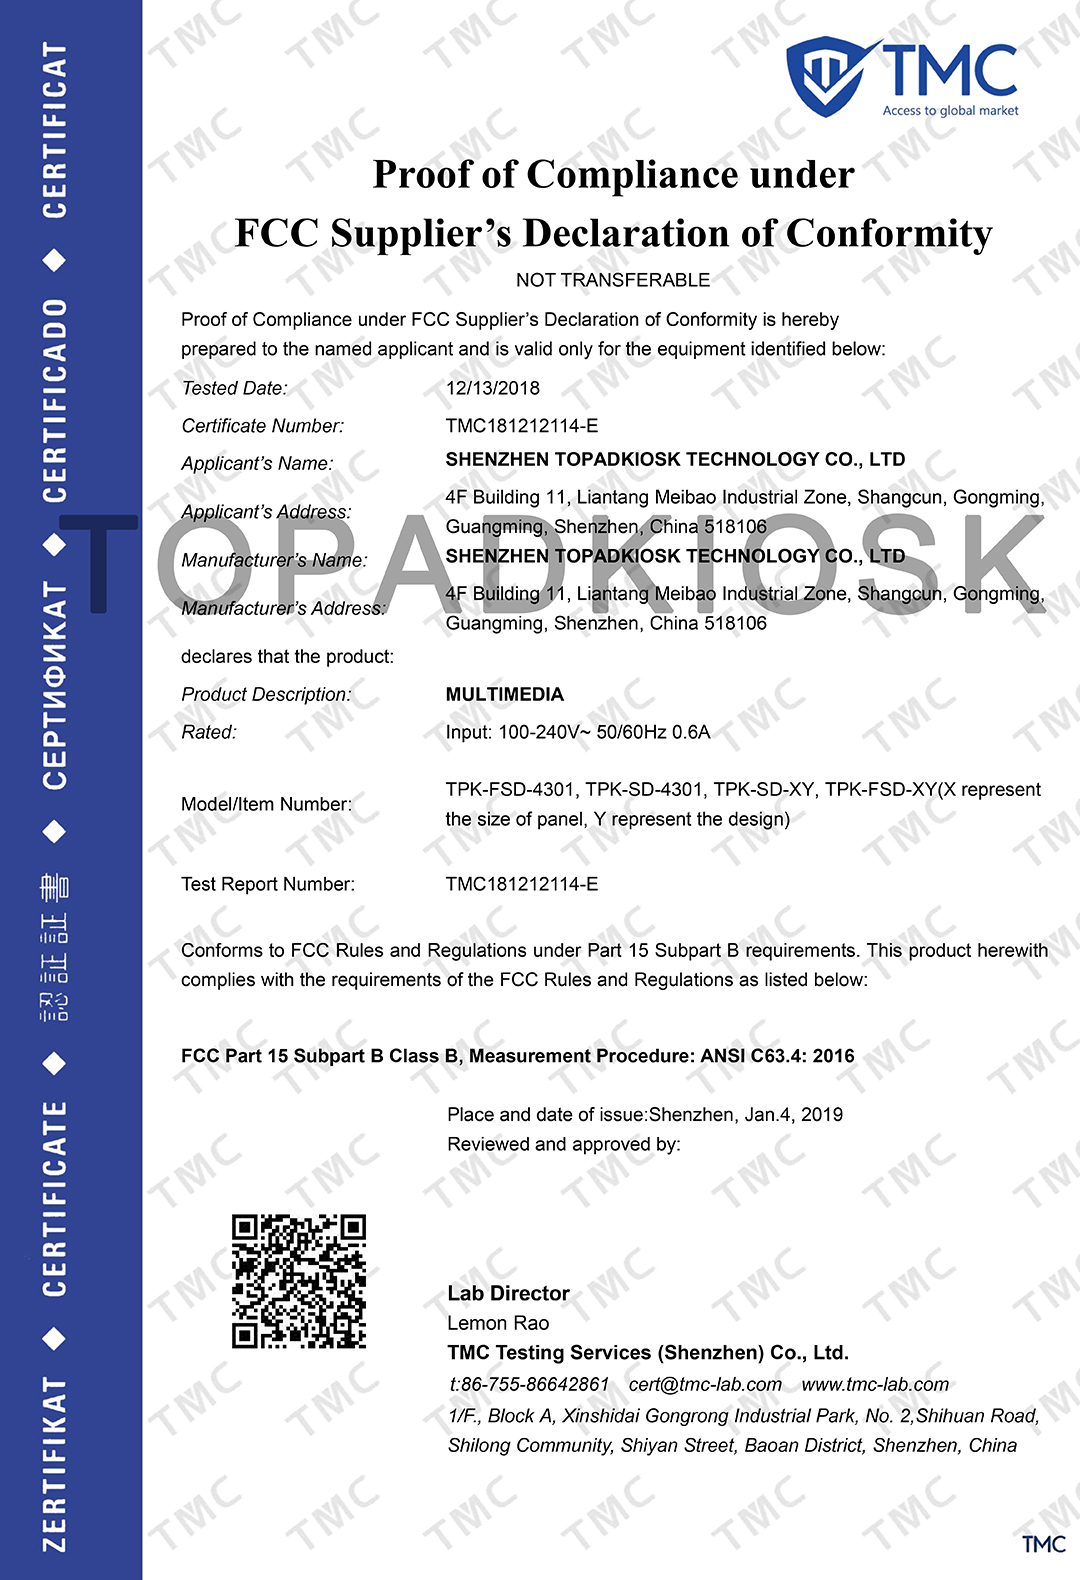 FCC certificates